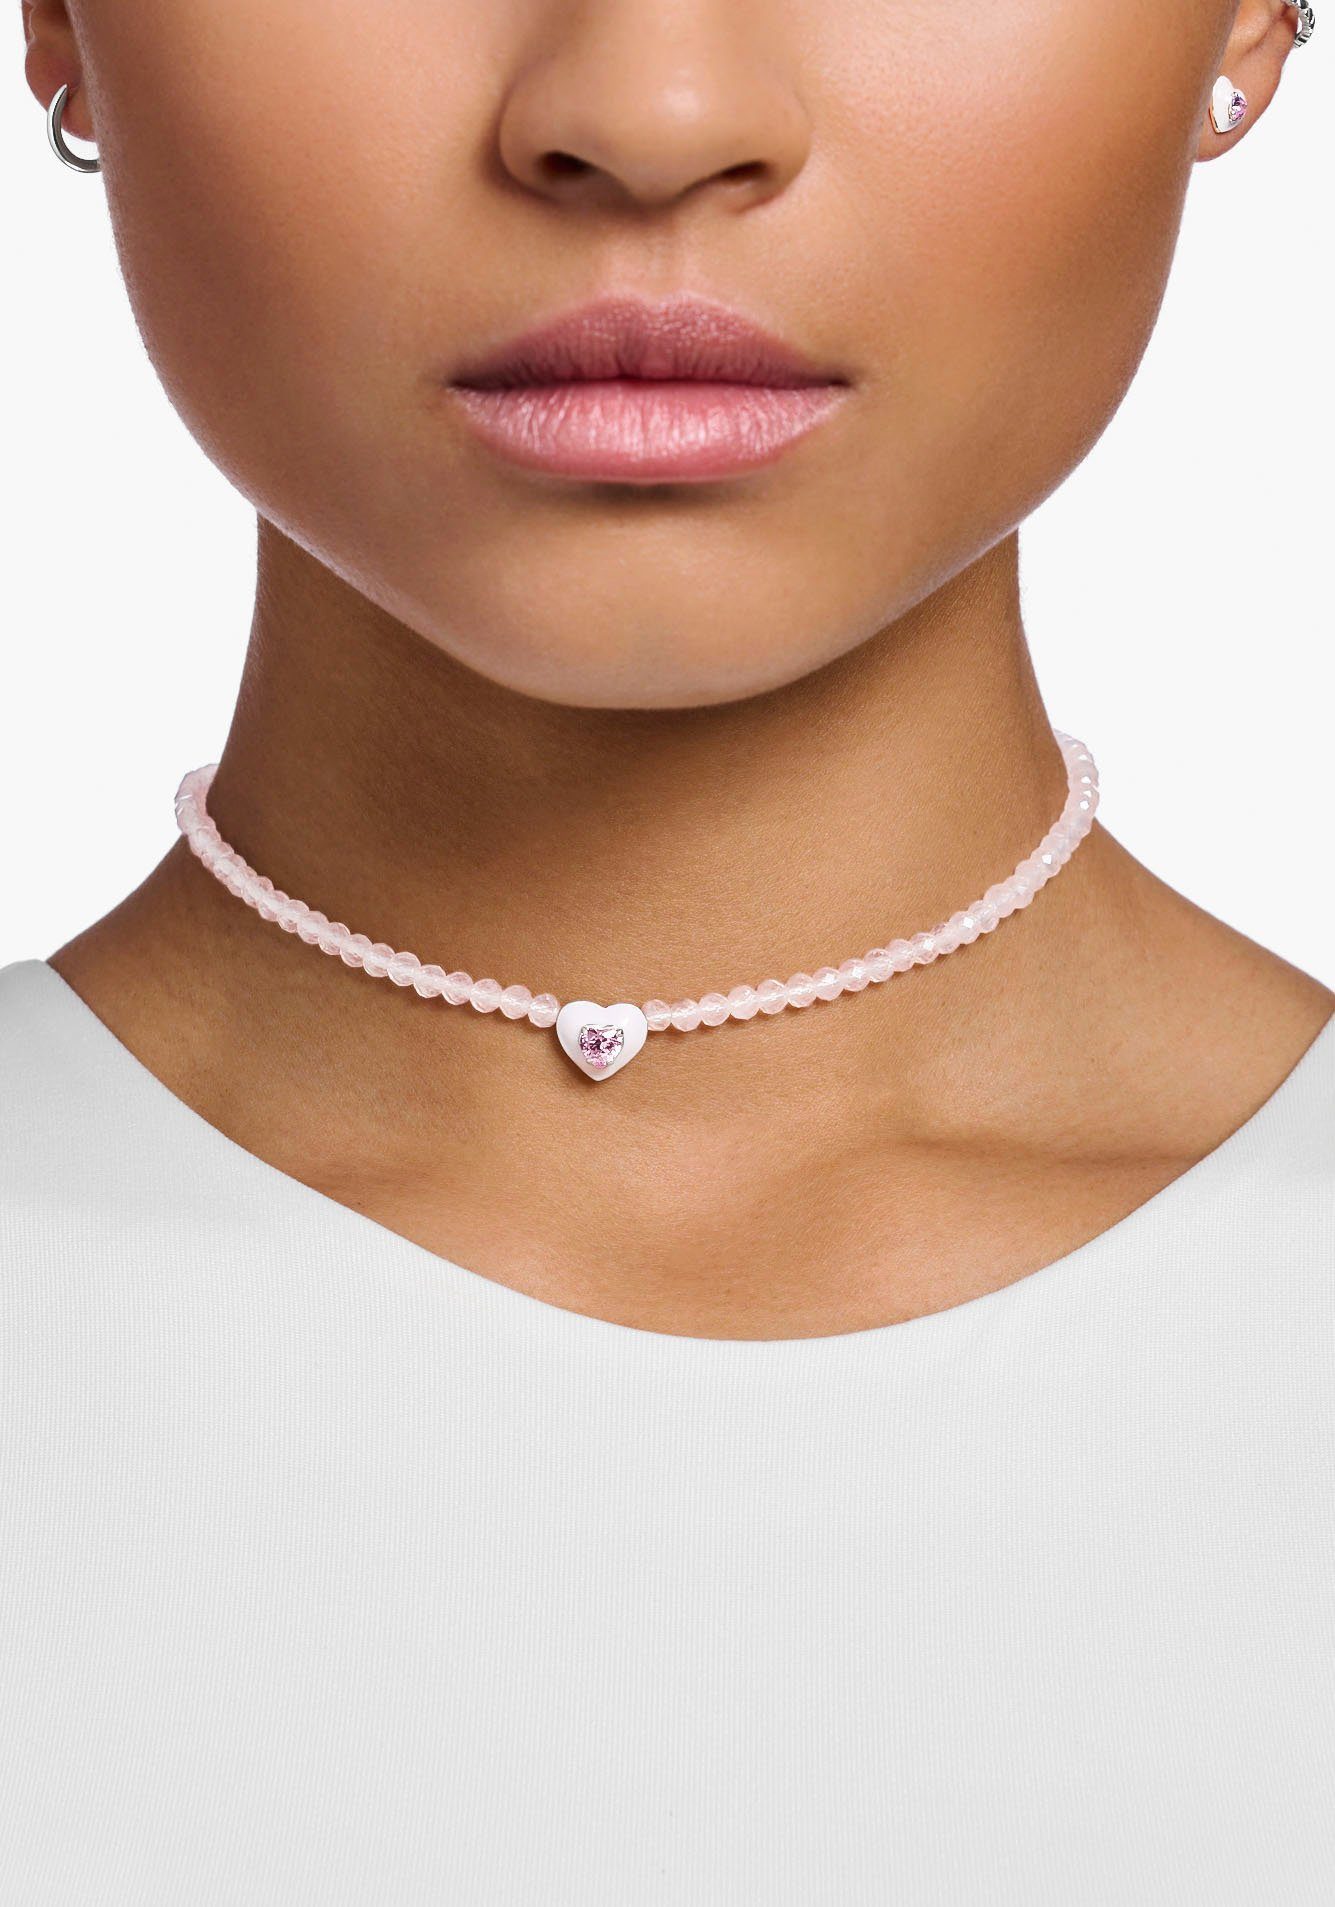 THOMAS SABO Choker Choker Herz mit pinken Perlen, KE2181-035-9-L42V, mit  Rosenquarz, Zirkonia (synth), Enganliegende Halskette aus kleinen,  rundgeschliffenen Rosenquarz-Beads